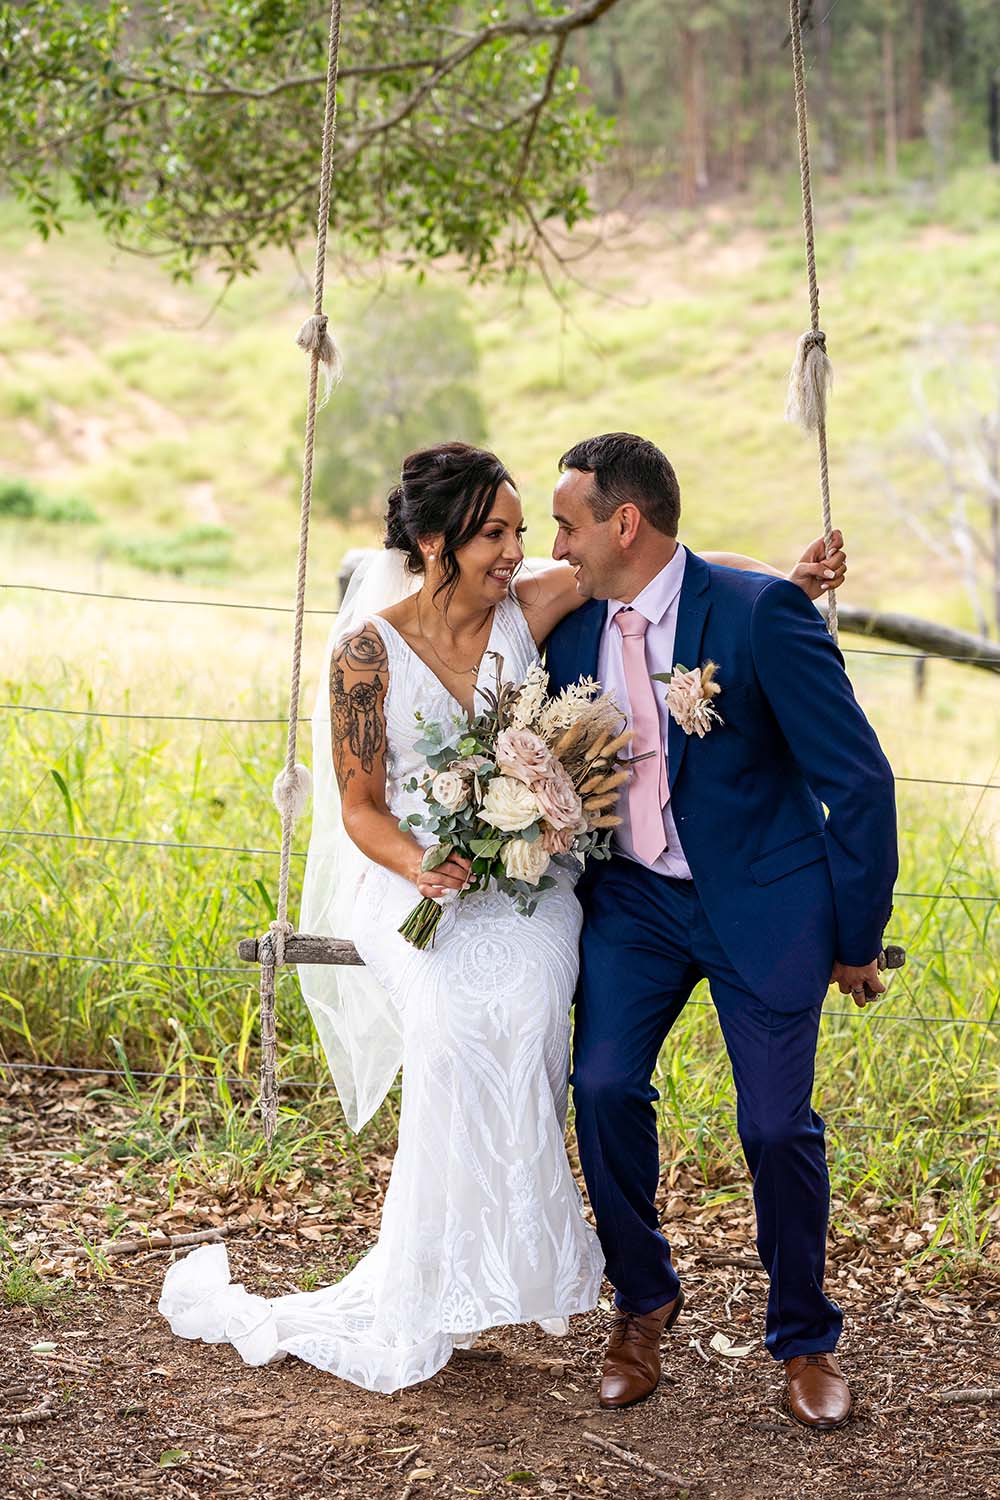 Wedding Photography - Couple on Swing